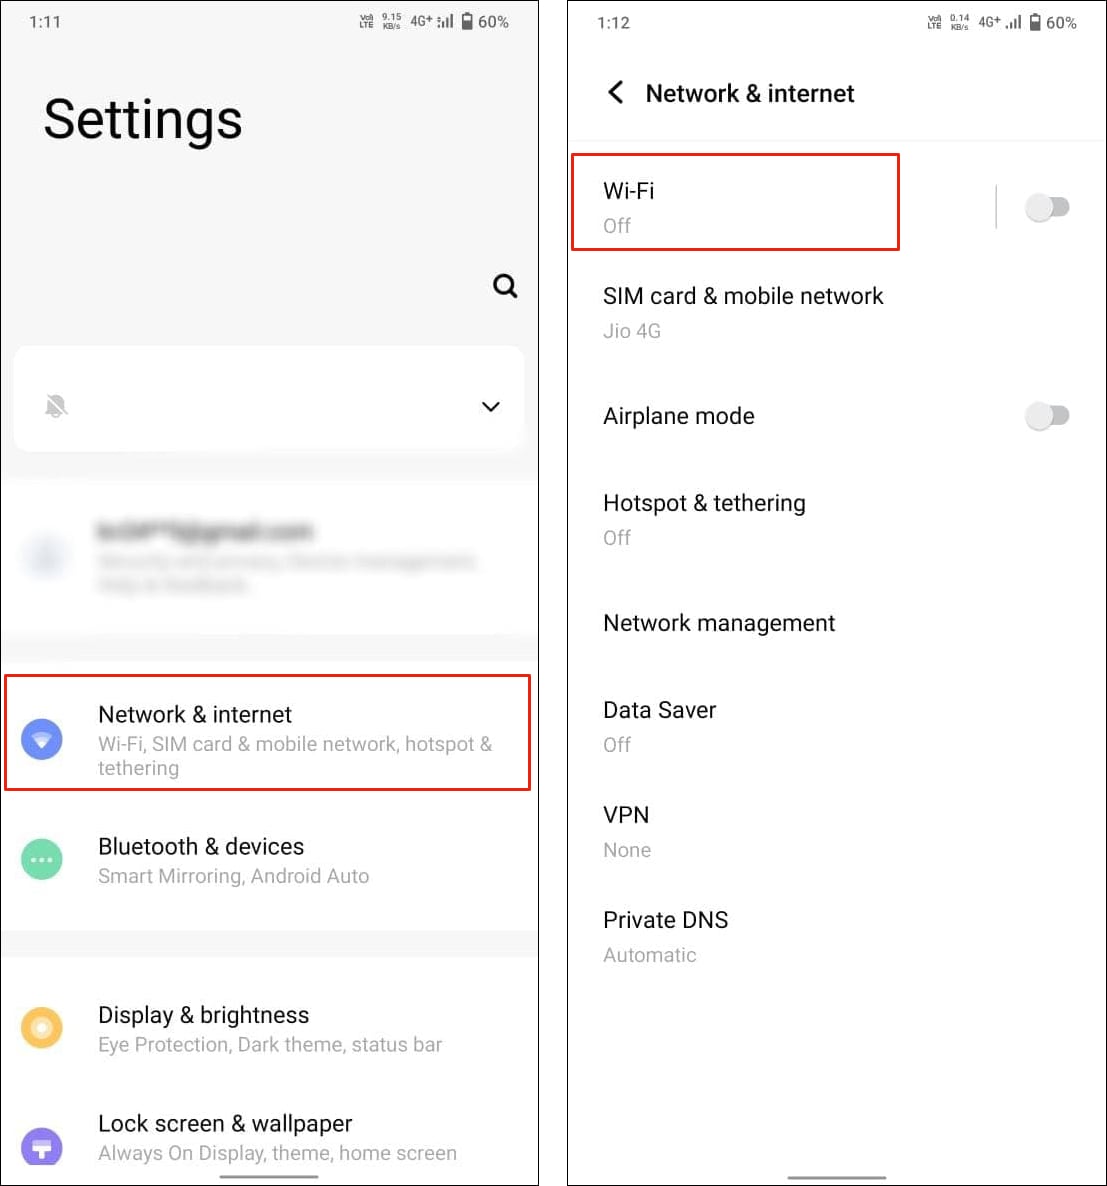 Open network settings on your Vivo/iQOO phone